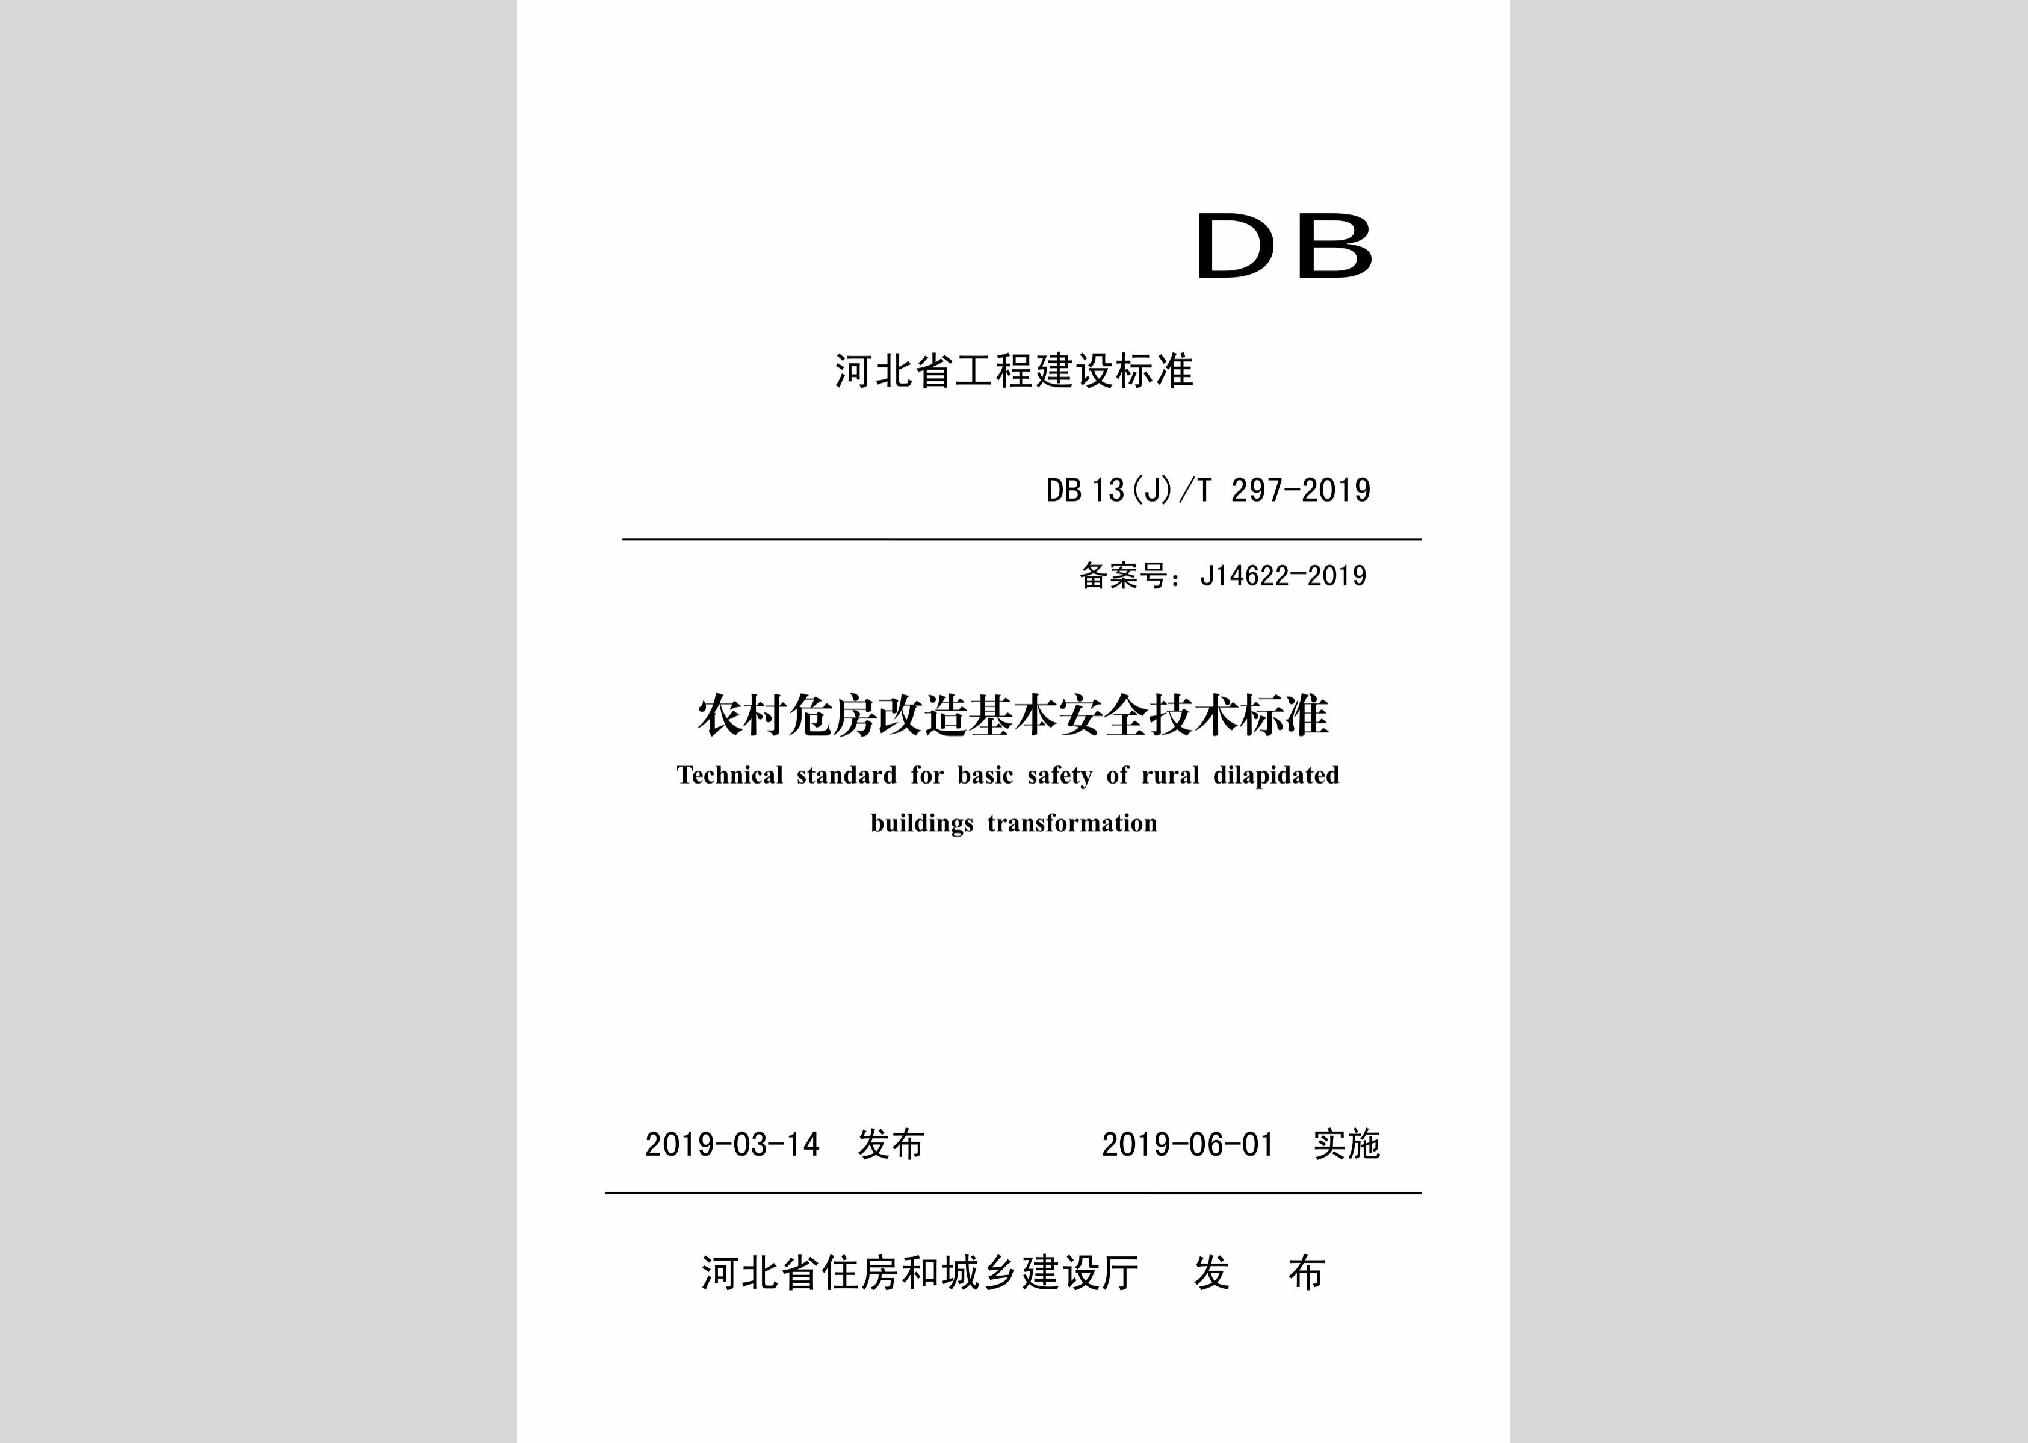 DB13(J)T297-2019：农村危房改造基本安全技术标准